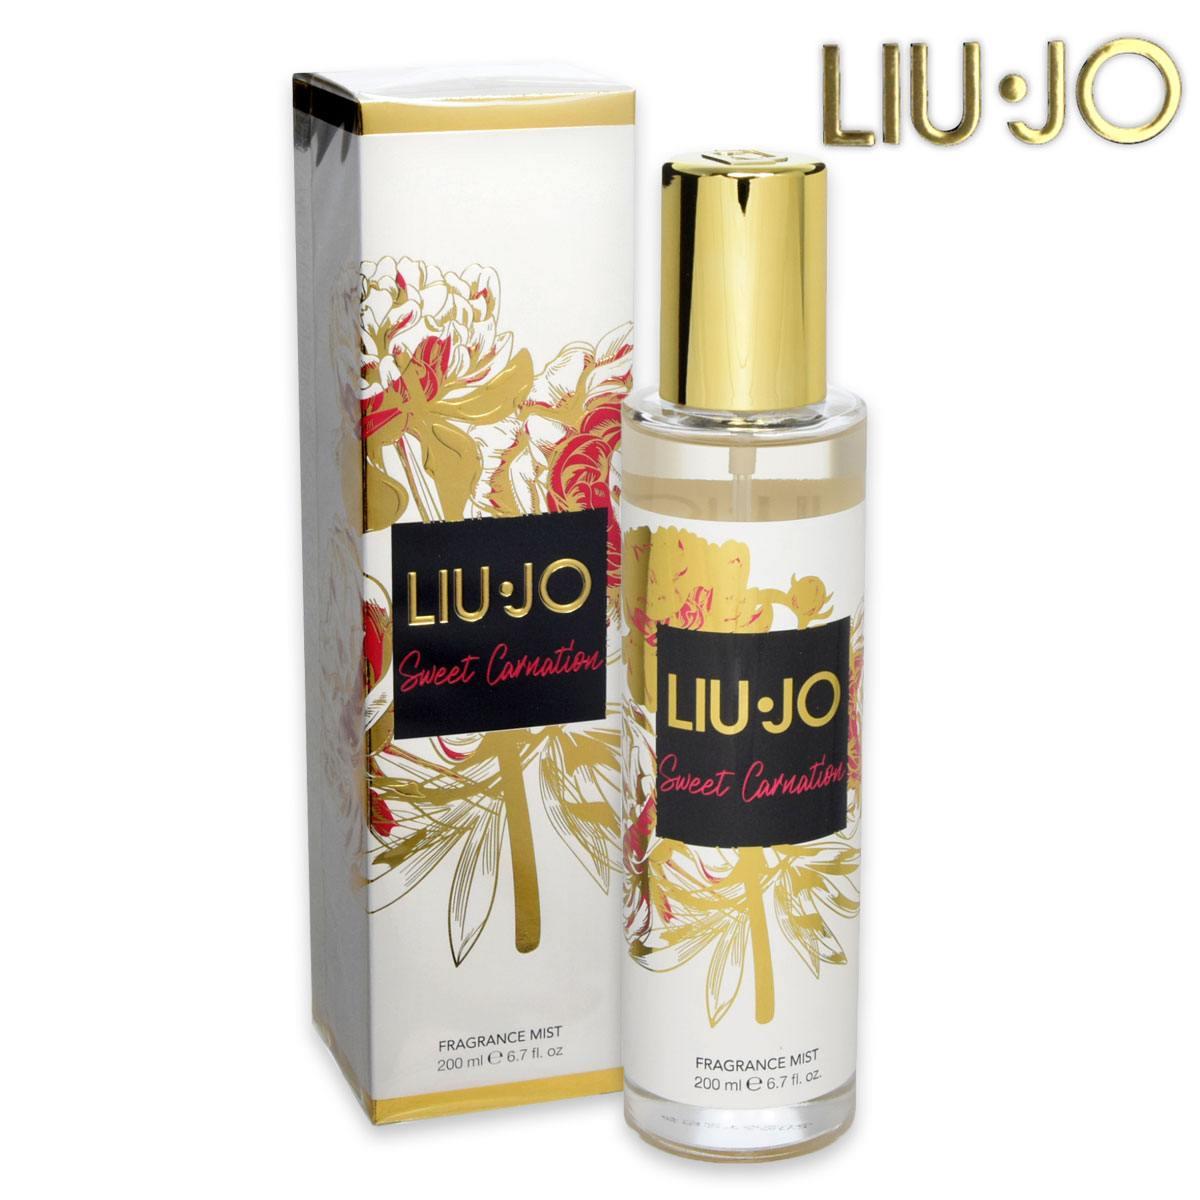 Liu-jo fragrance mist 200 ml sweet carnation